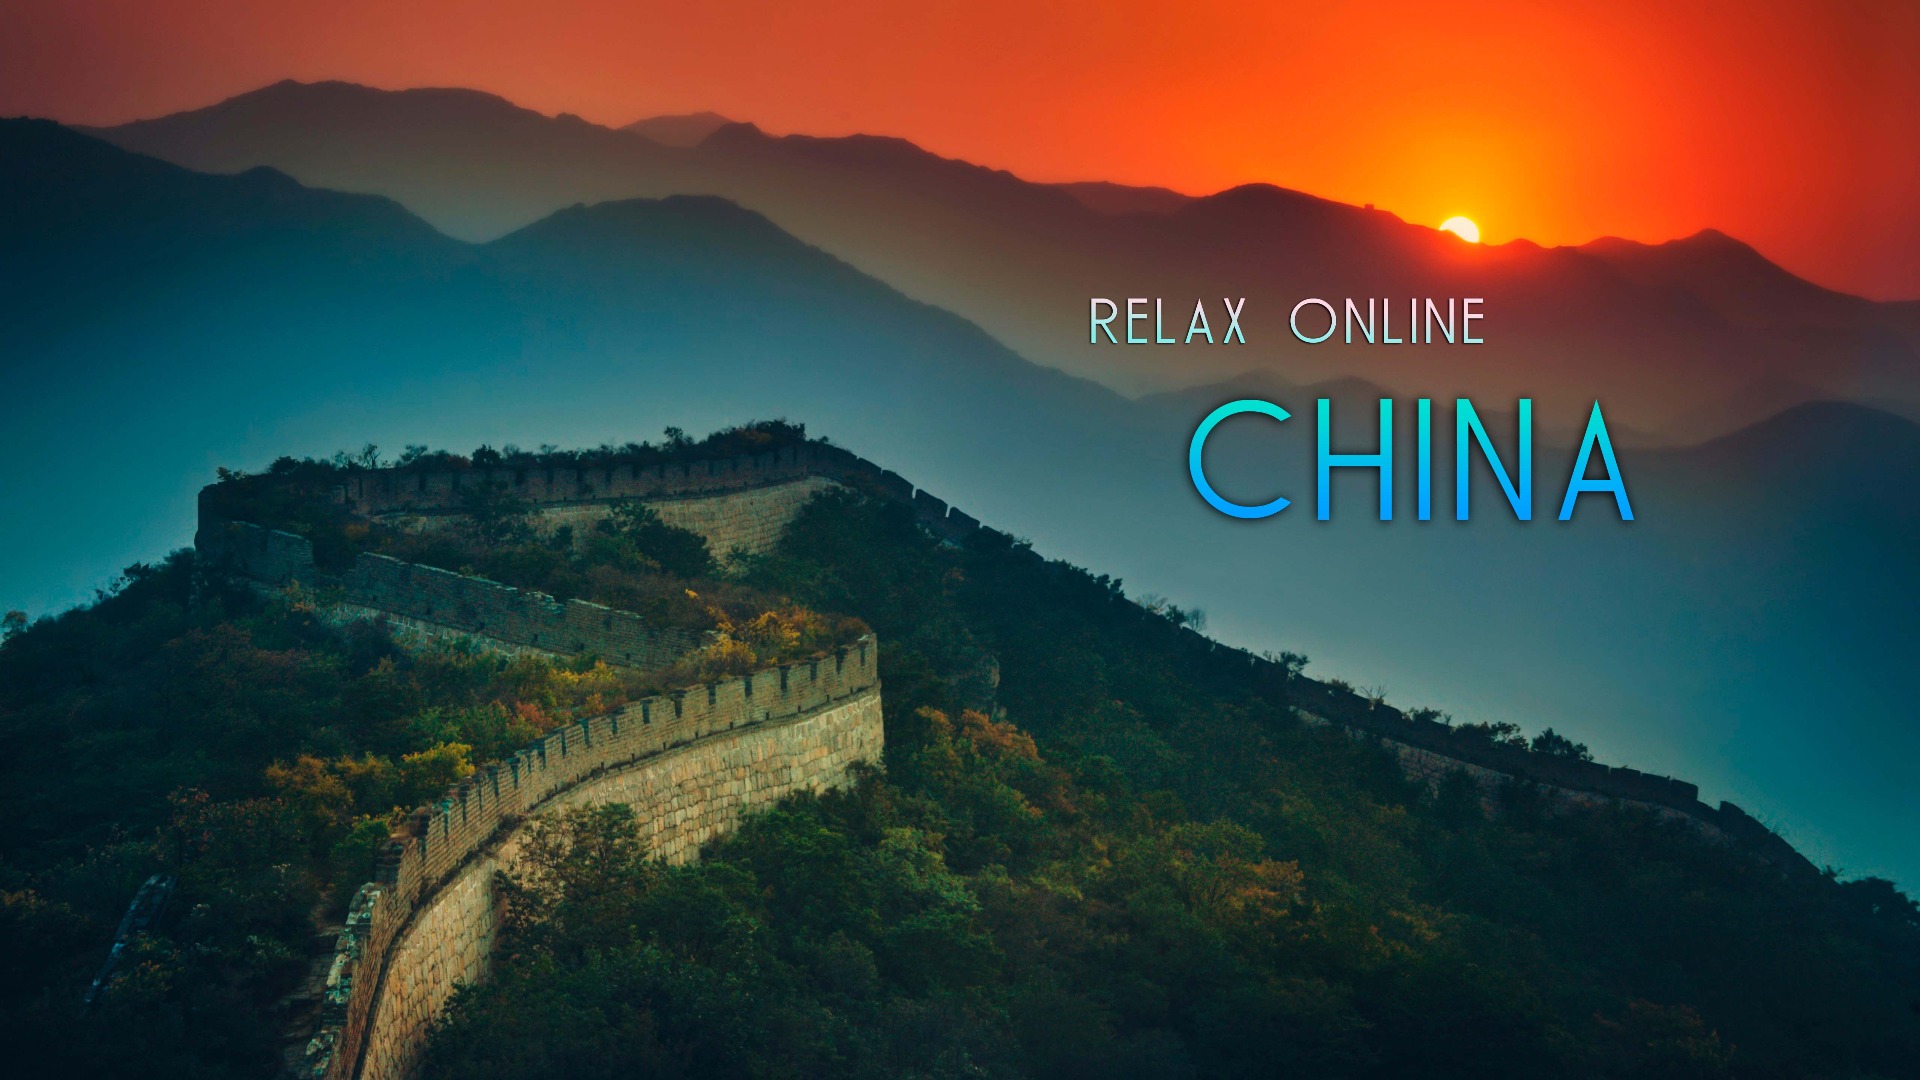 Путешествие по Китаю, релаксация онлайн, медитация онлайн